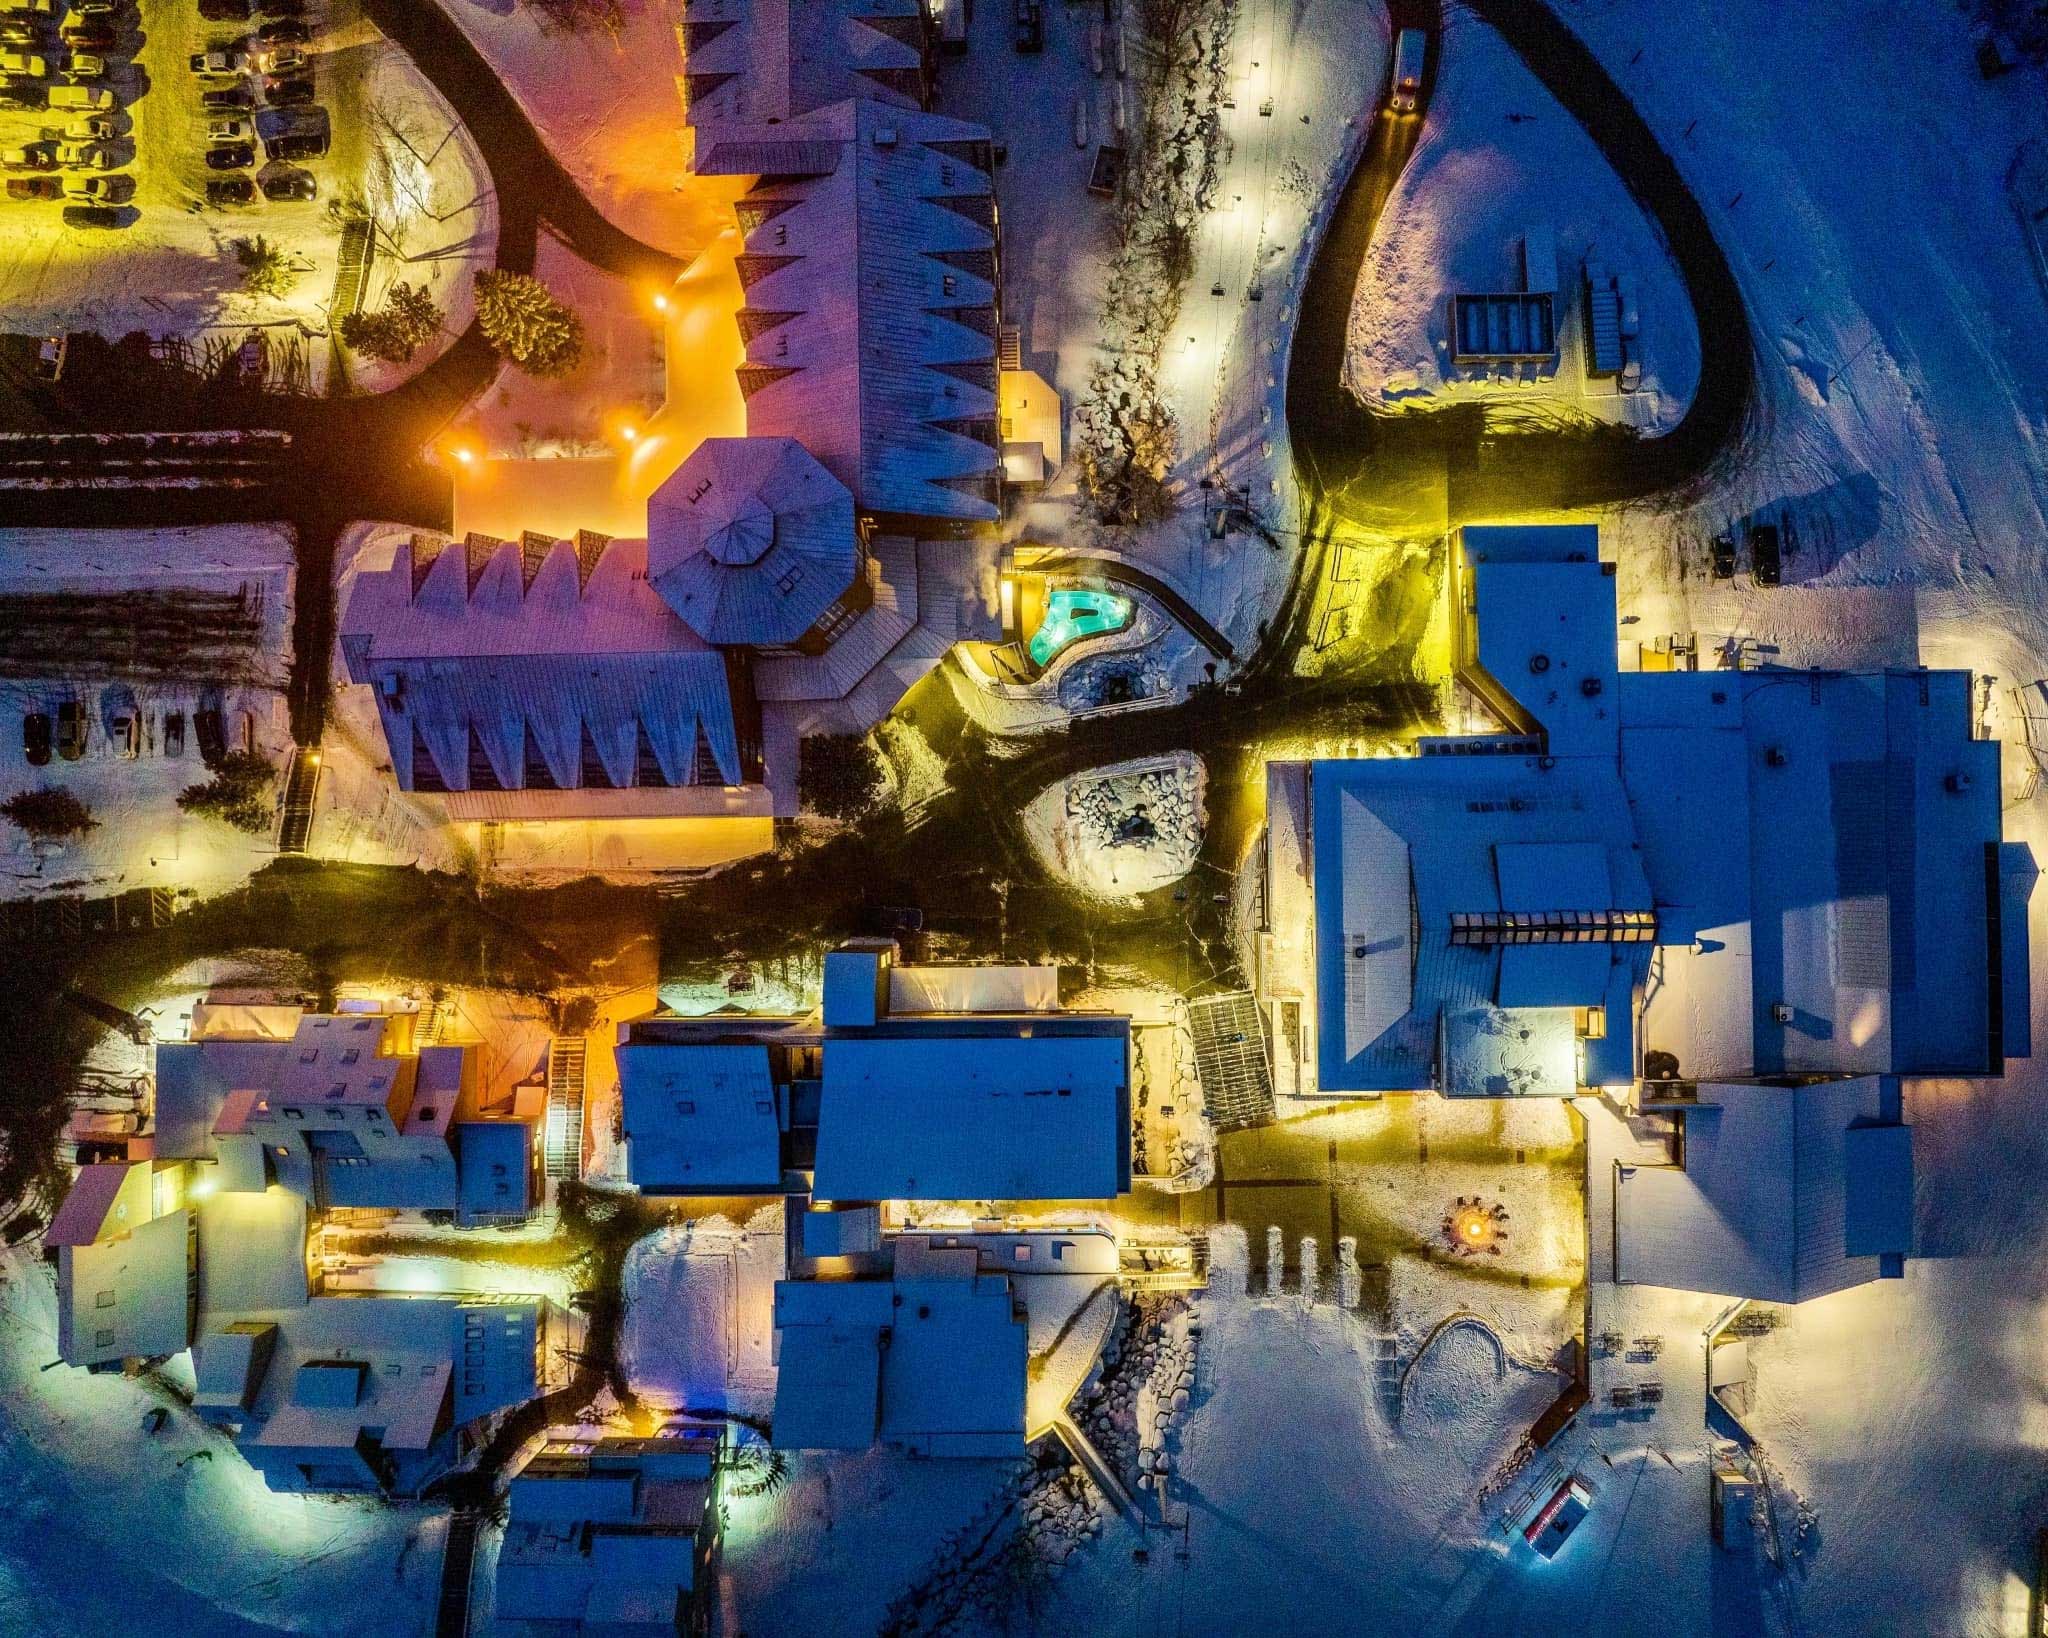 Aerial shot of Sugarloaf Village